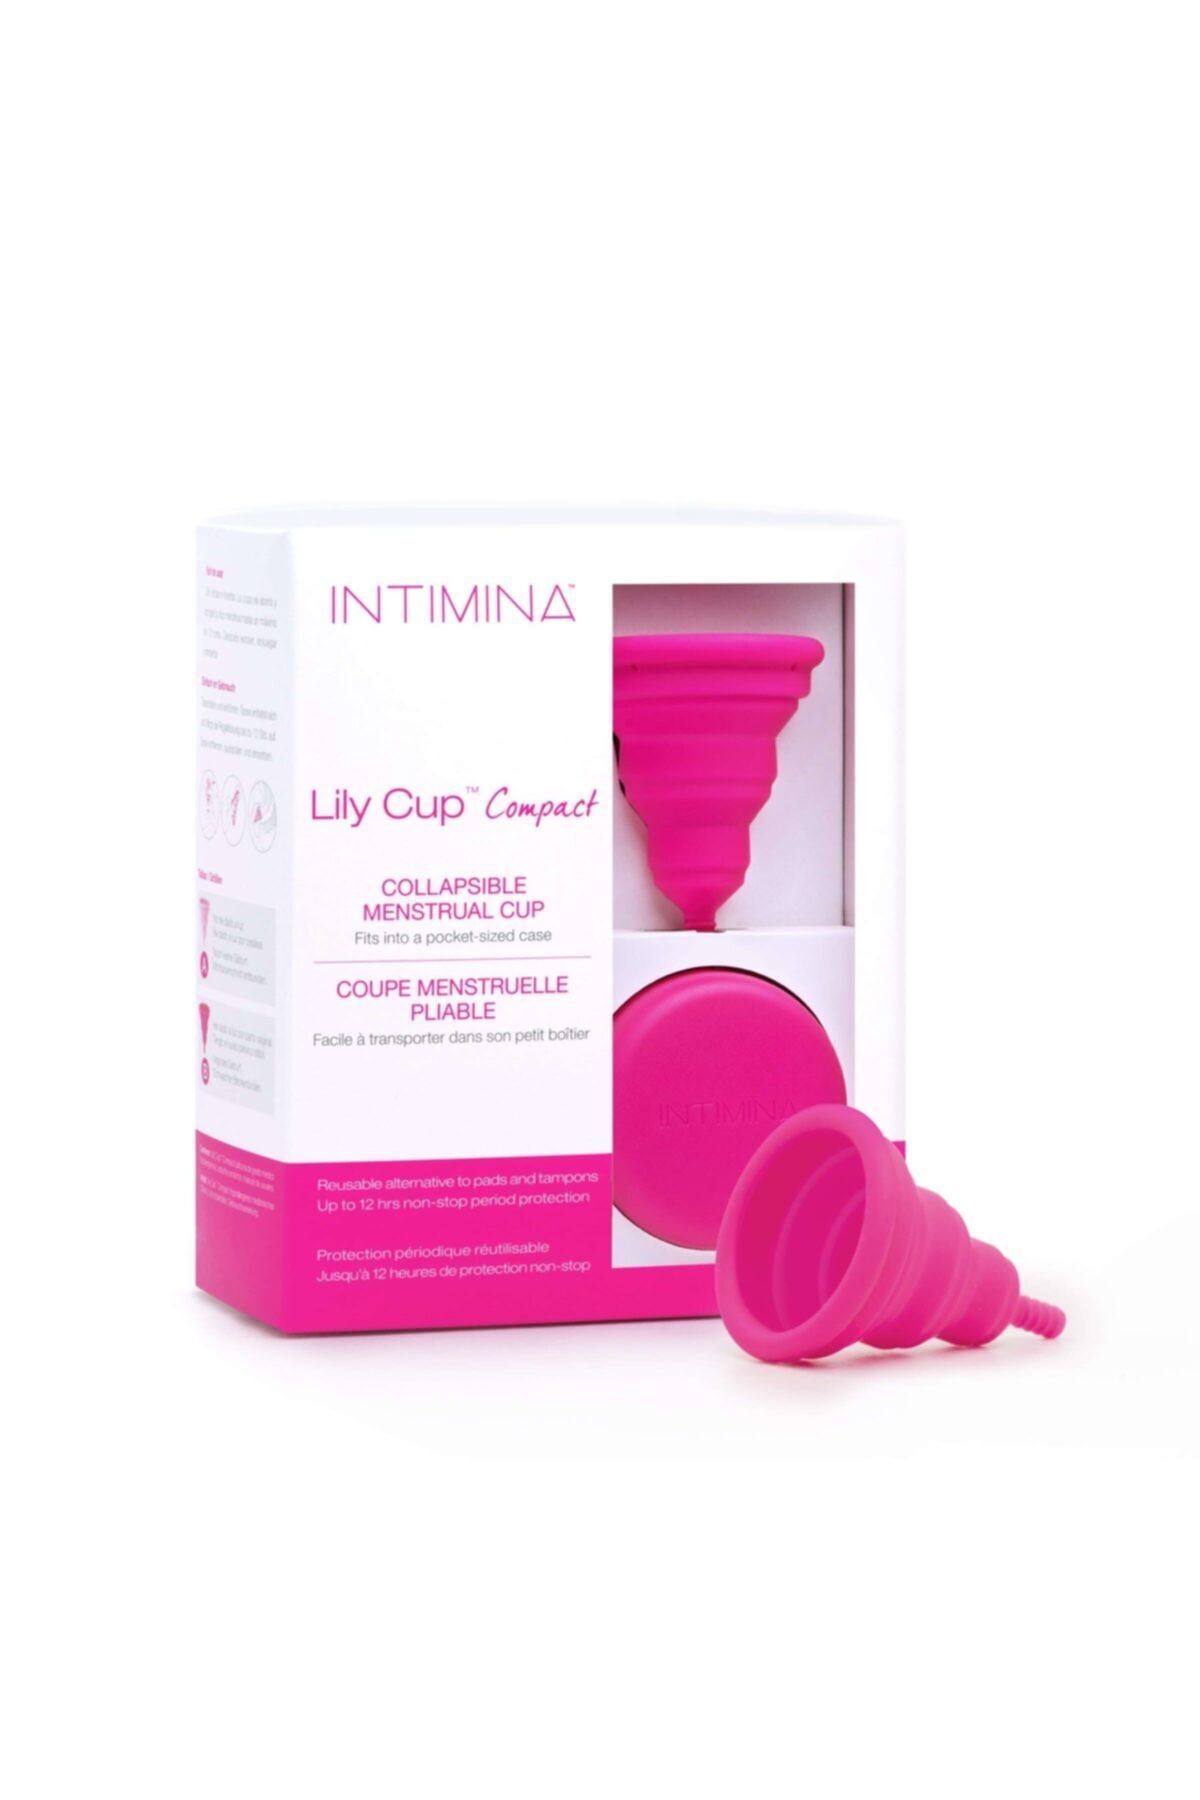 INTIMINA Lily Cup™ Compact-adet Kabı-menstrual Kap-size B